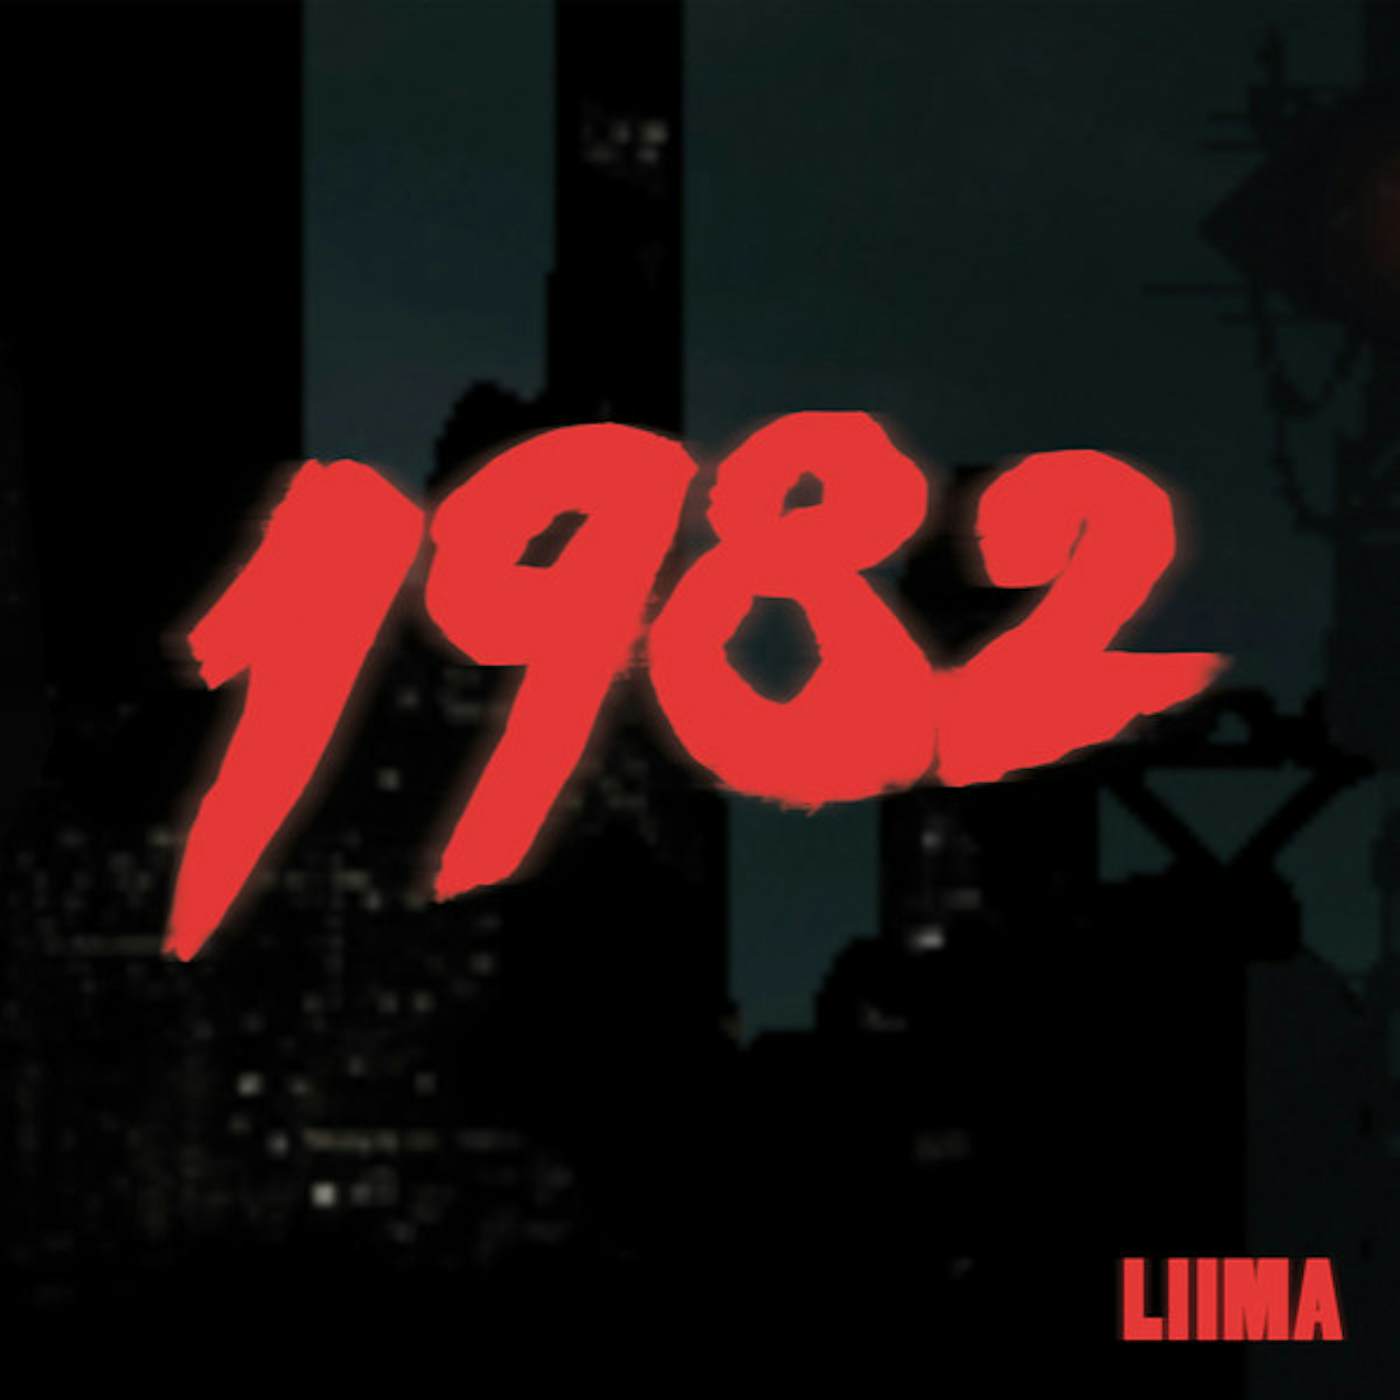 Liima 1982 Vinyl Record